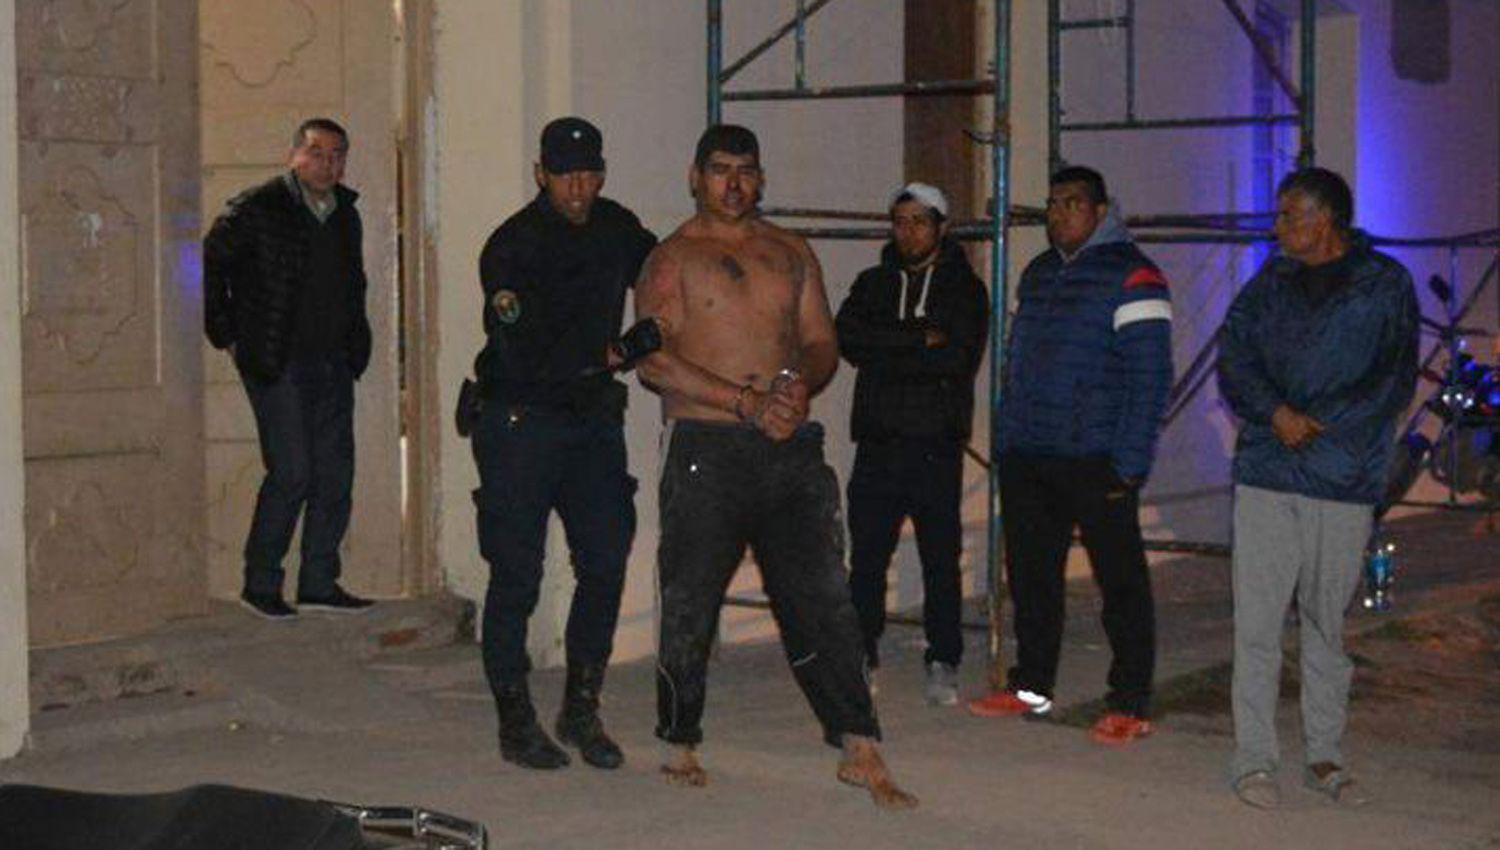 En la noche los Contreras cayeron detenidos Ahora uno solo sigue apresado y con prisión preventiva